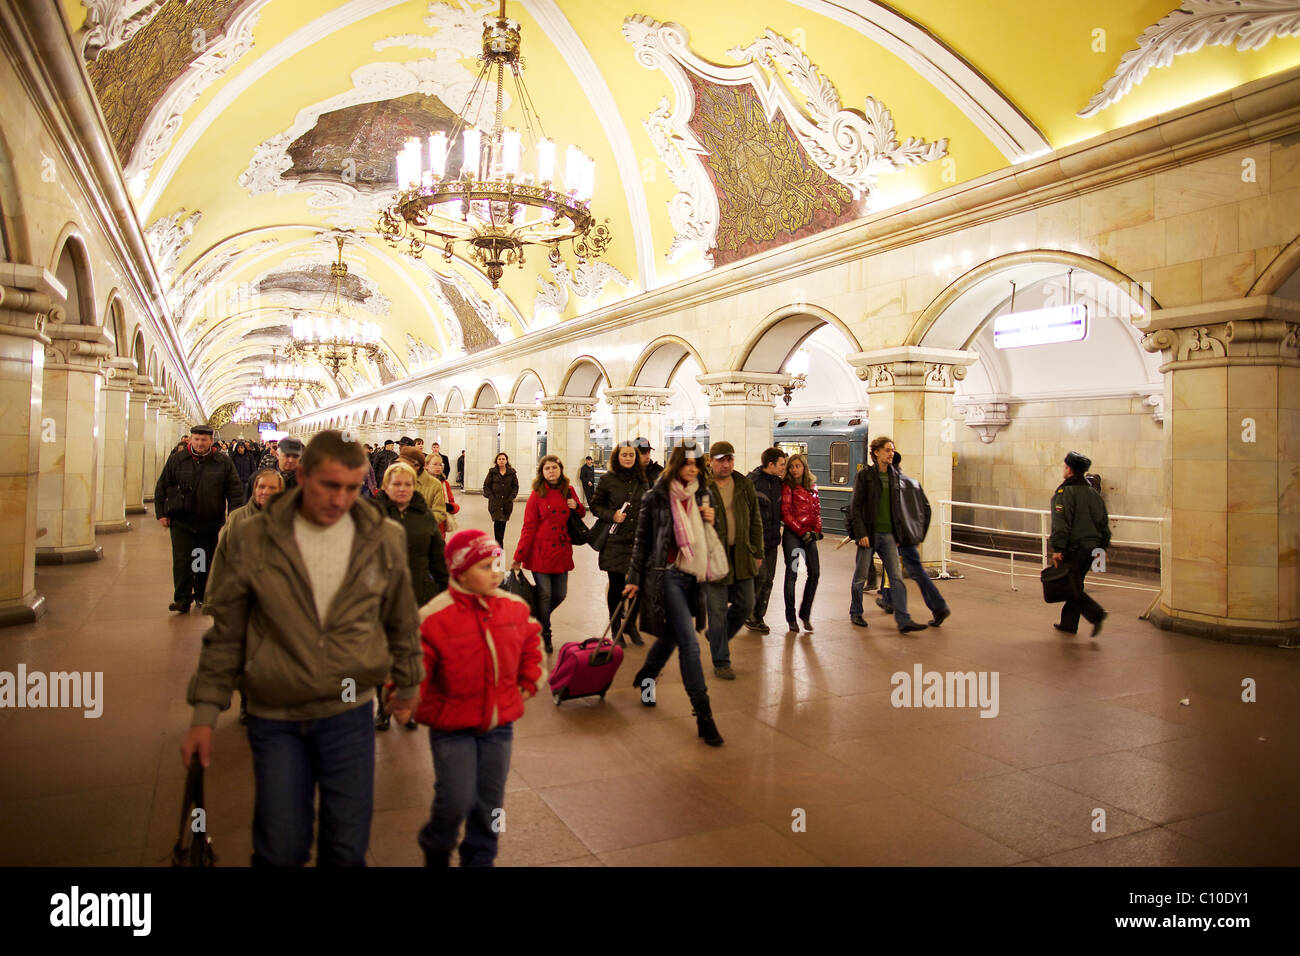 Spettacolari soffitti a volta e lampadari a Mosca Komsomolskaya stazione della metropolitana, Russia Foto Stock